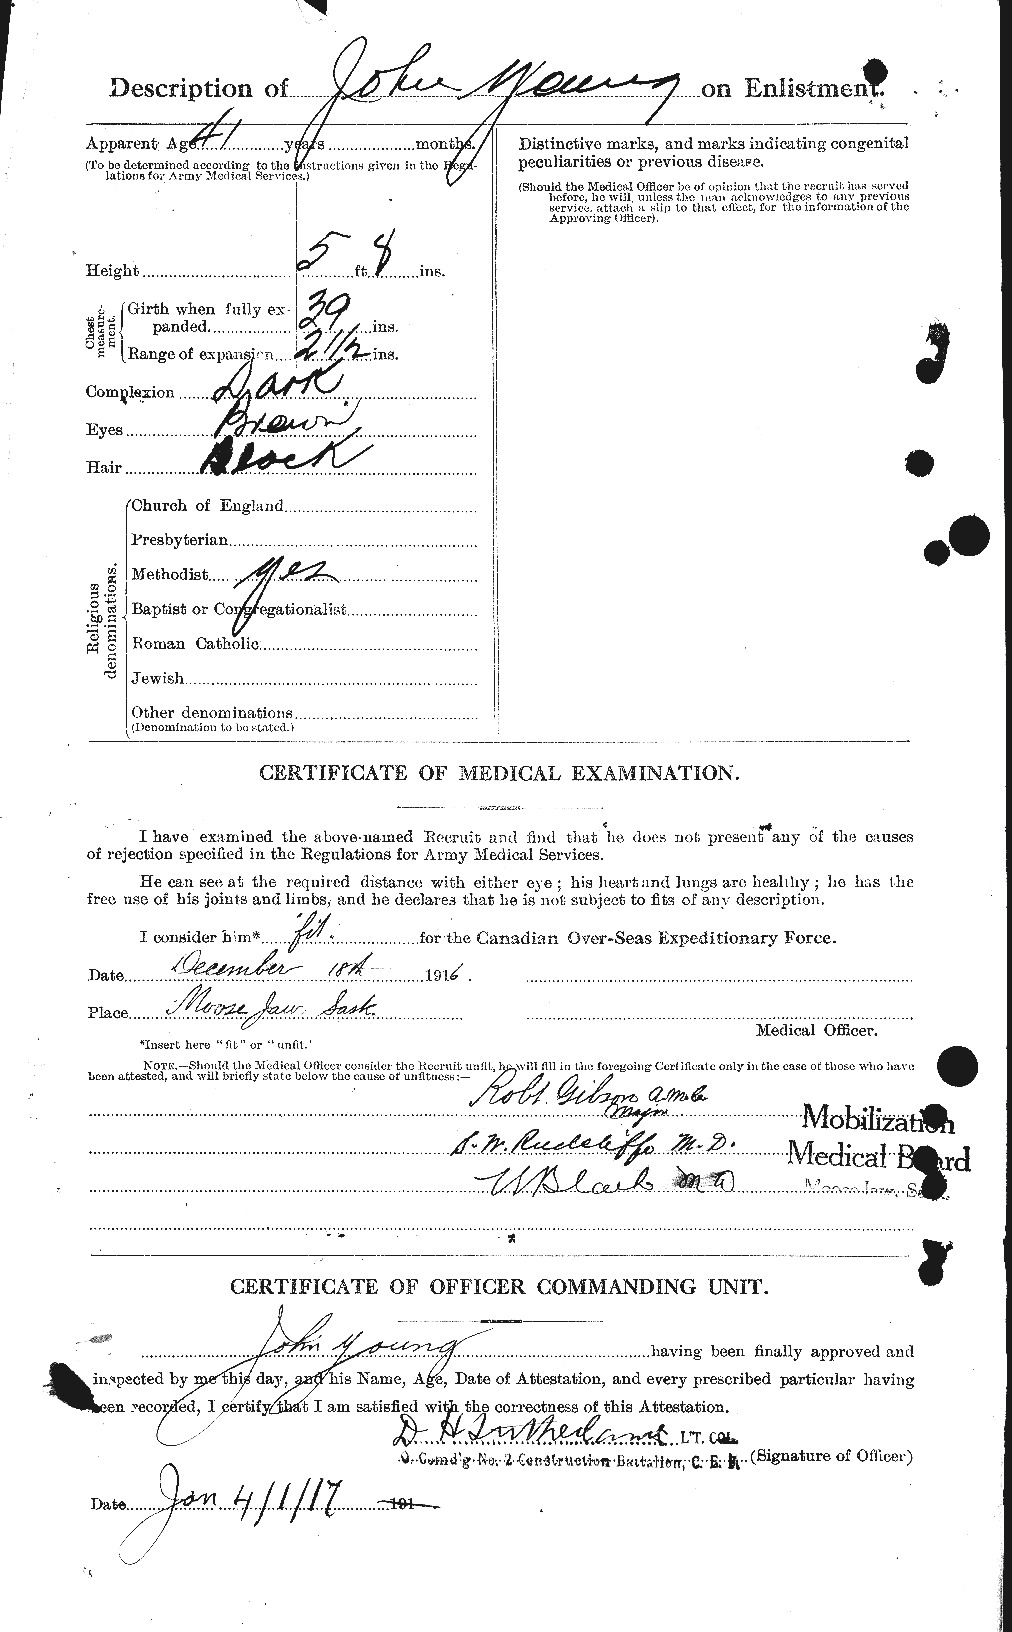 Dossiers du Personnel de la Première Guerre mondiale - CEC 690721b